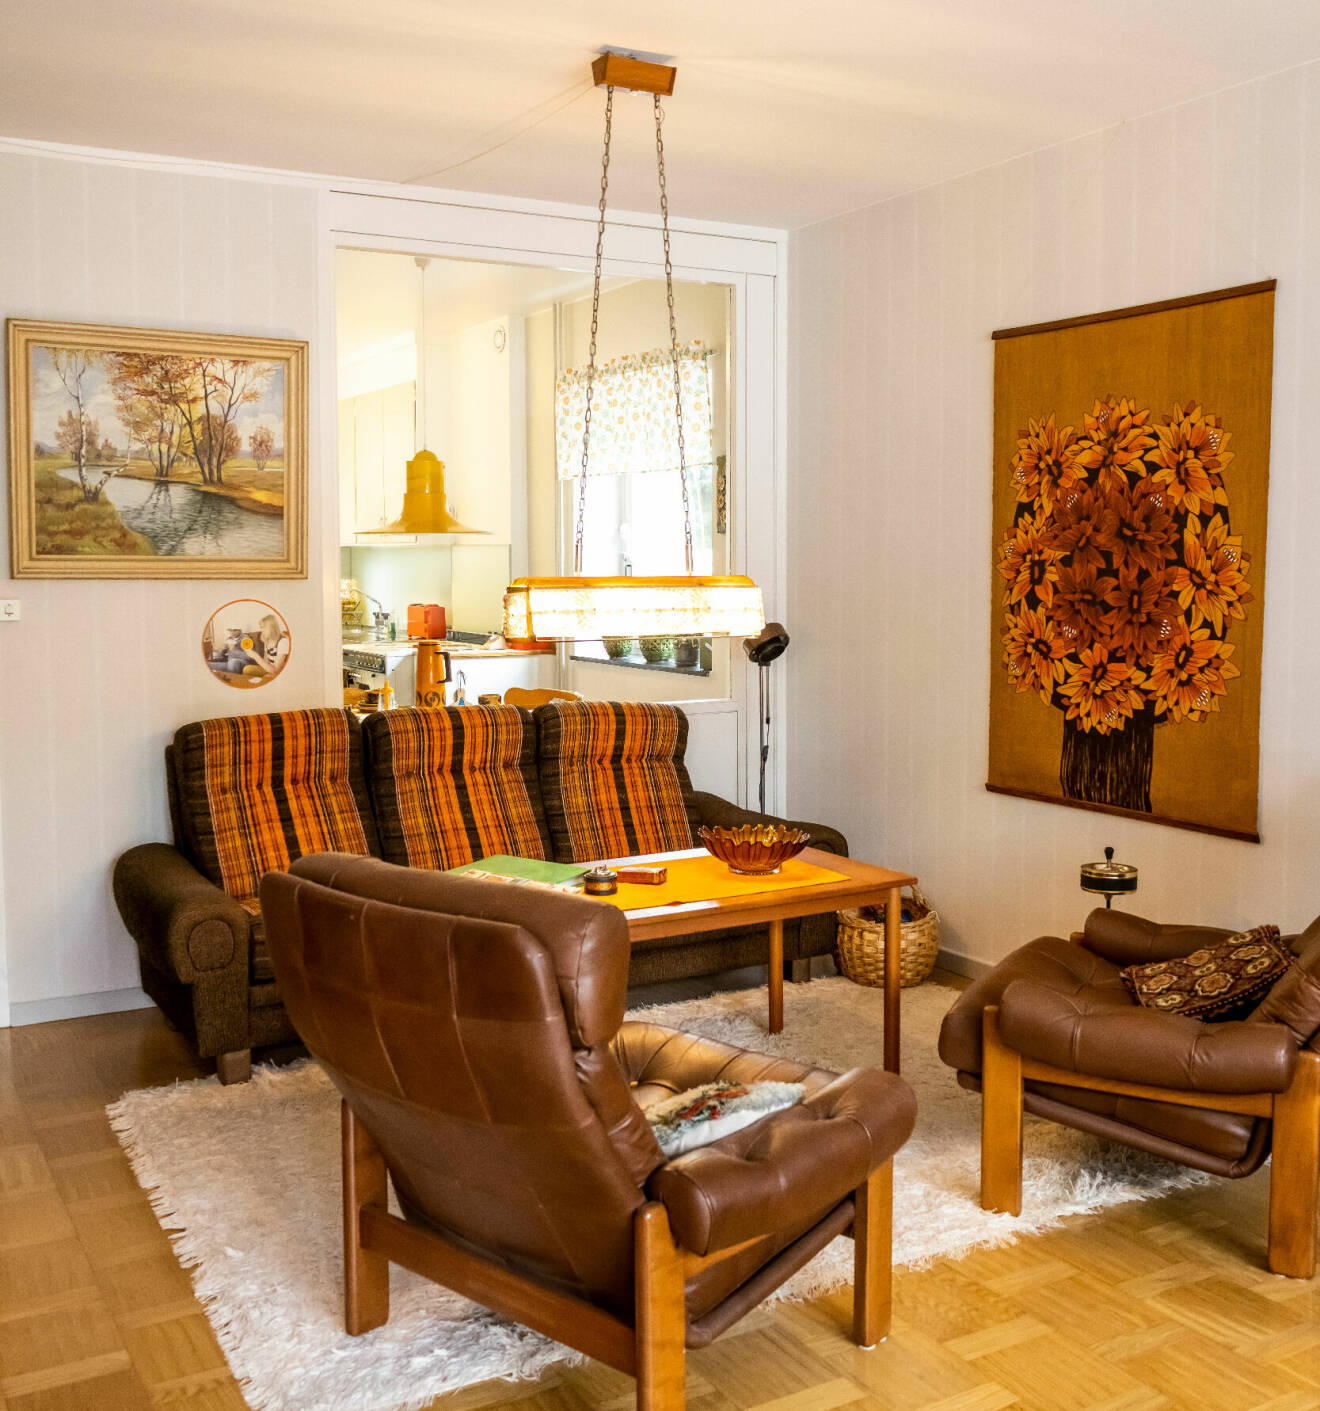 Vardagsrum i 70-talsstil. Bruna läderfåtöljer, en brunorange soffa och på väggen en bonad som också går i brunt och orange.